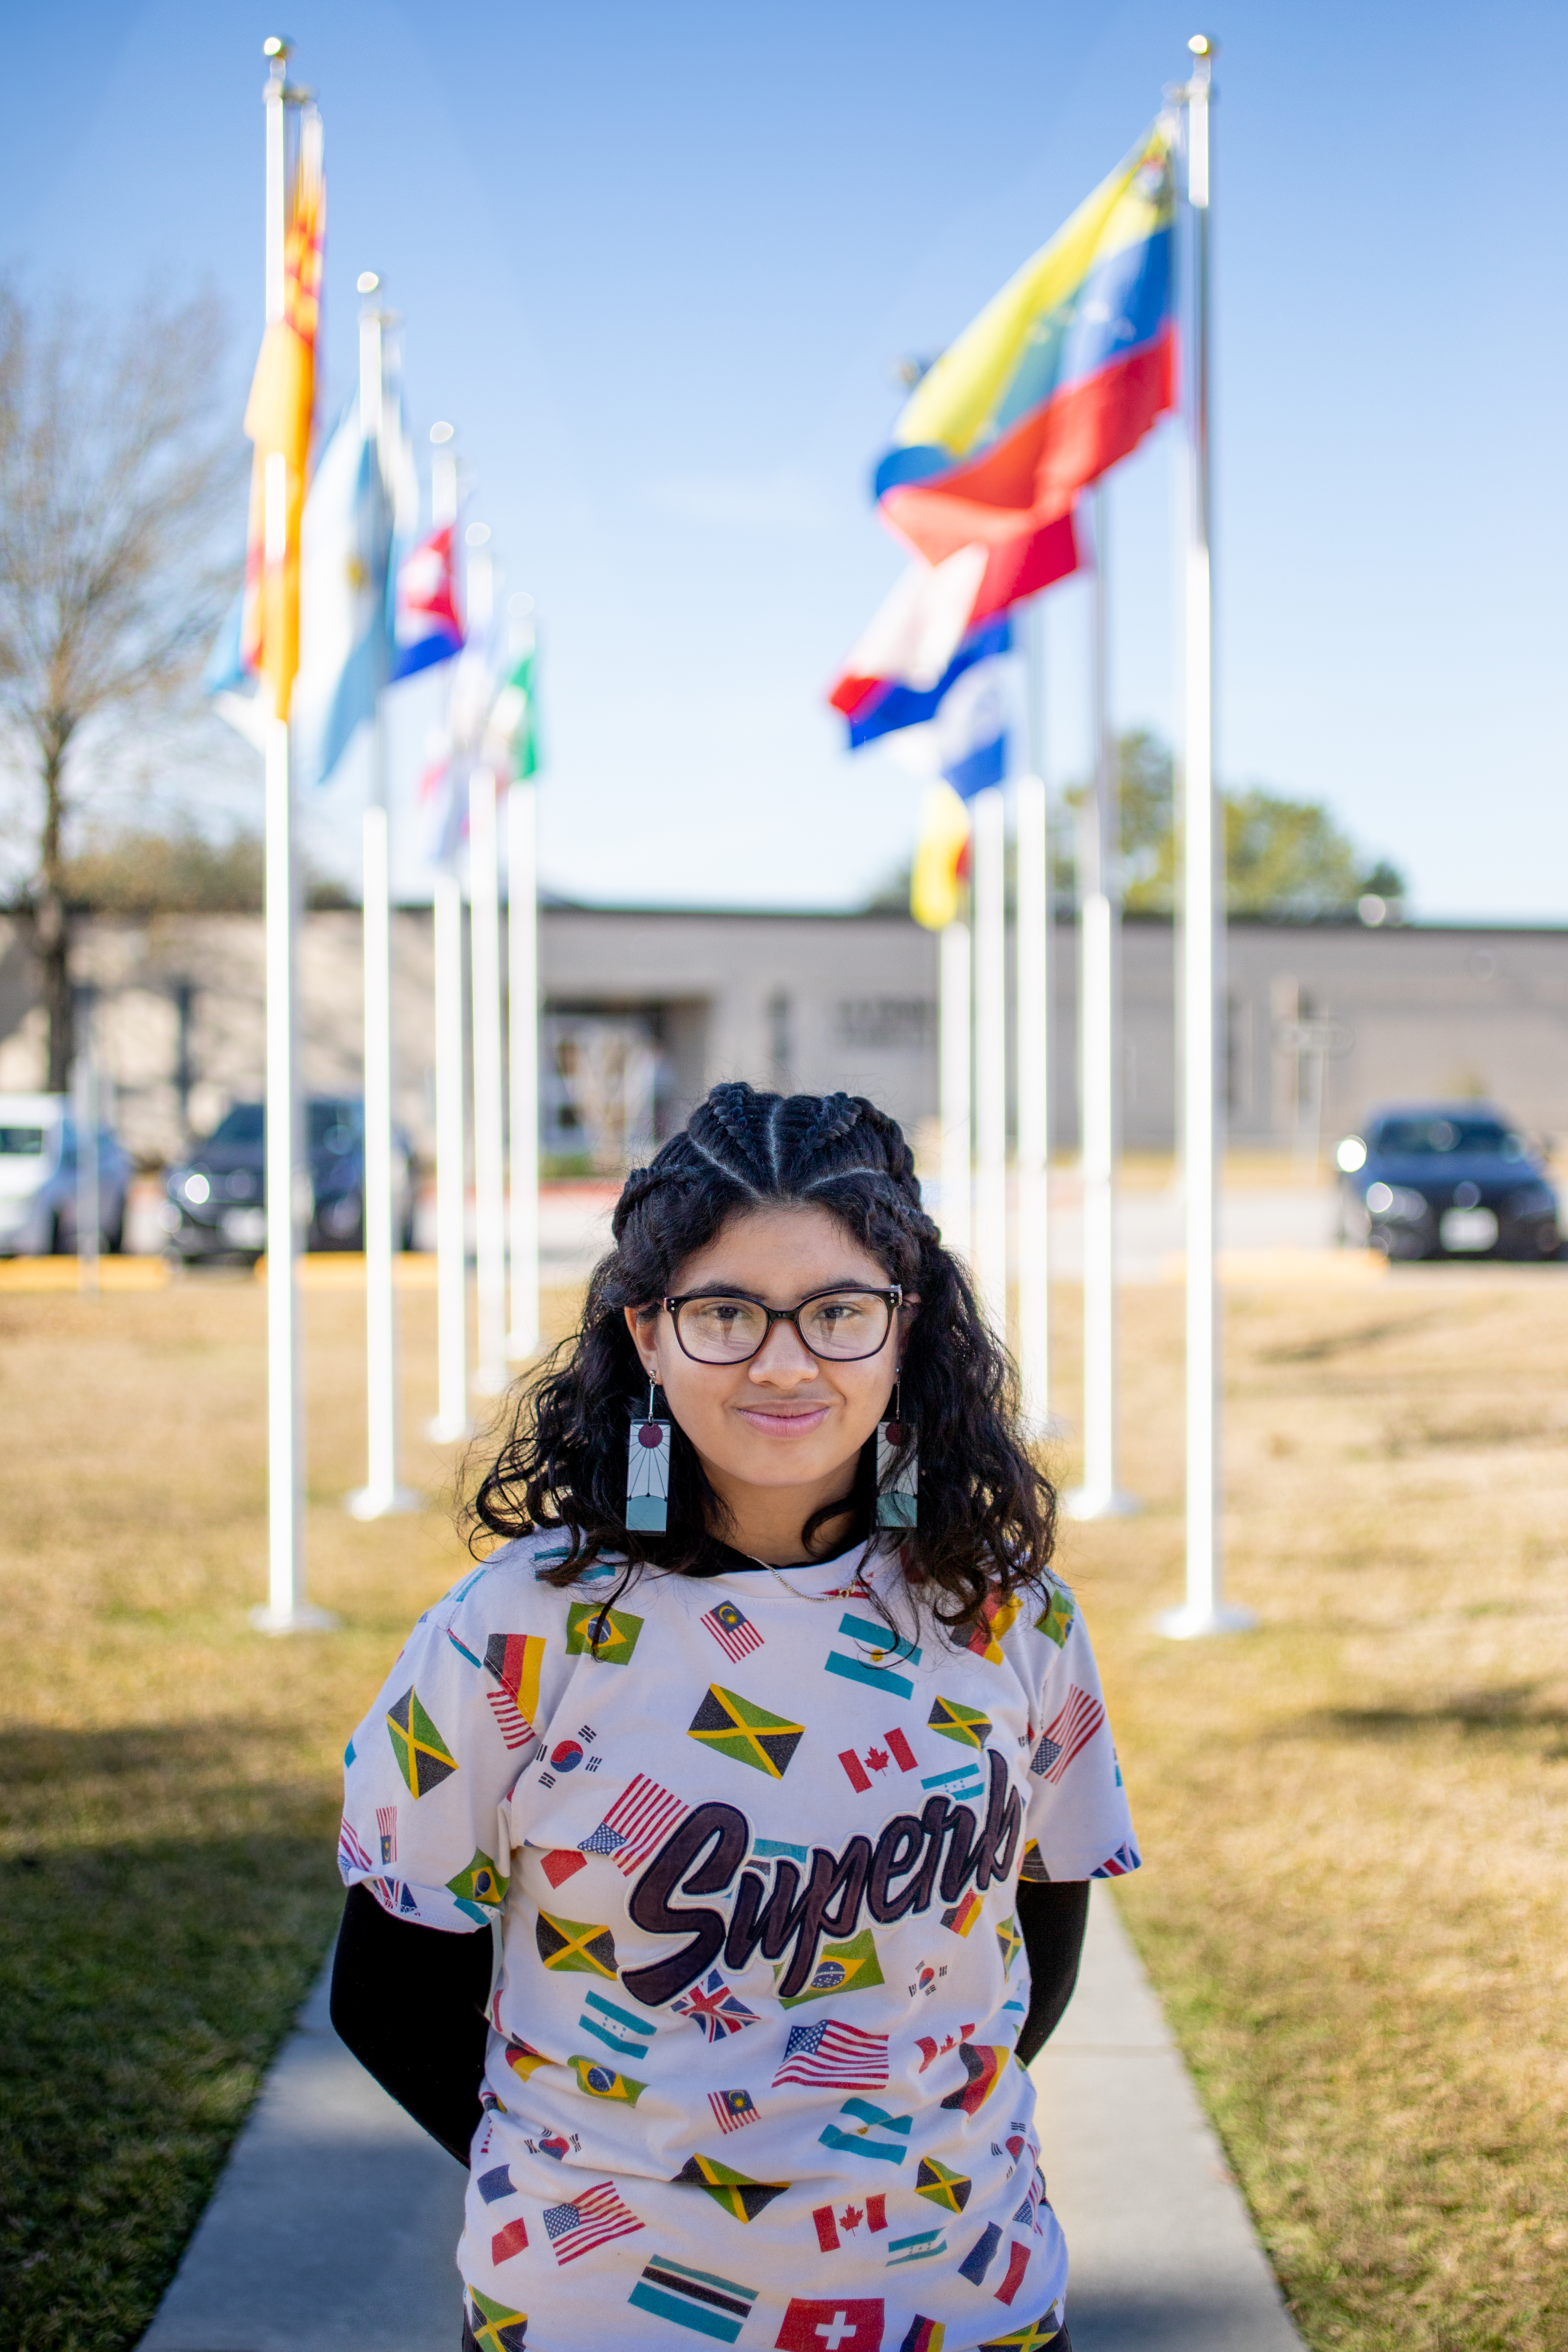 Girl standing in front of school